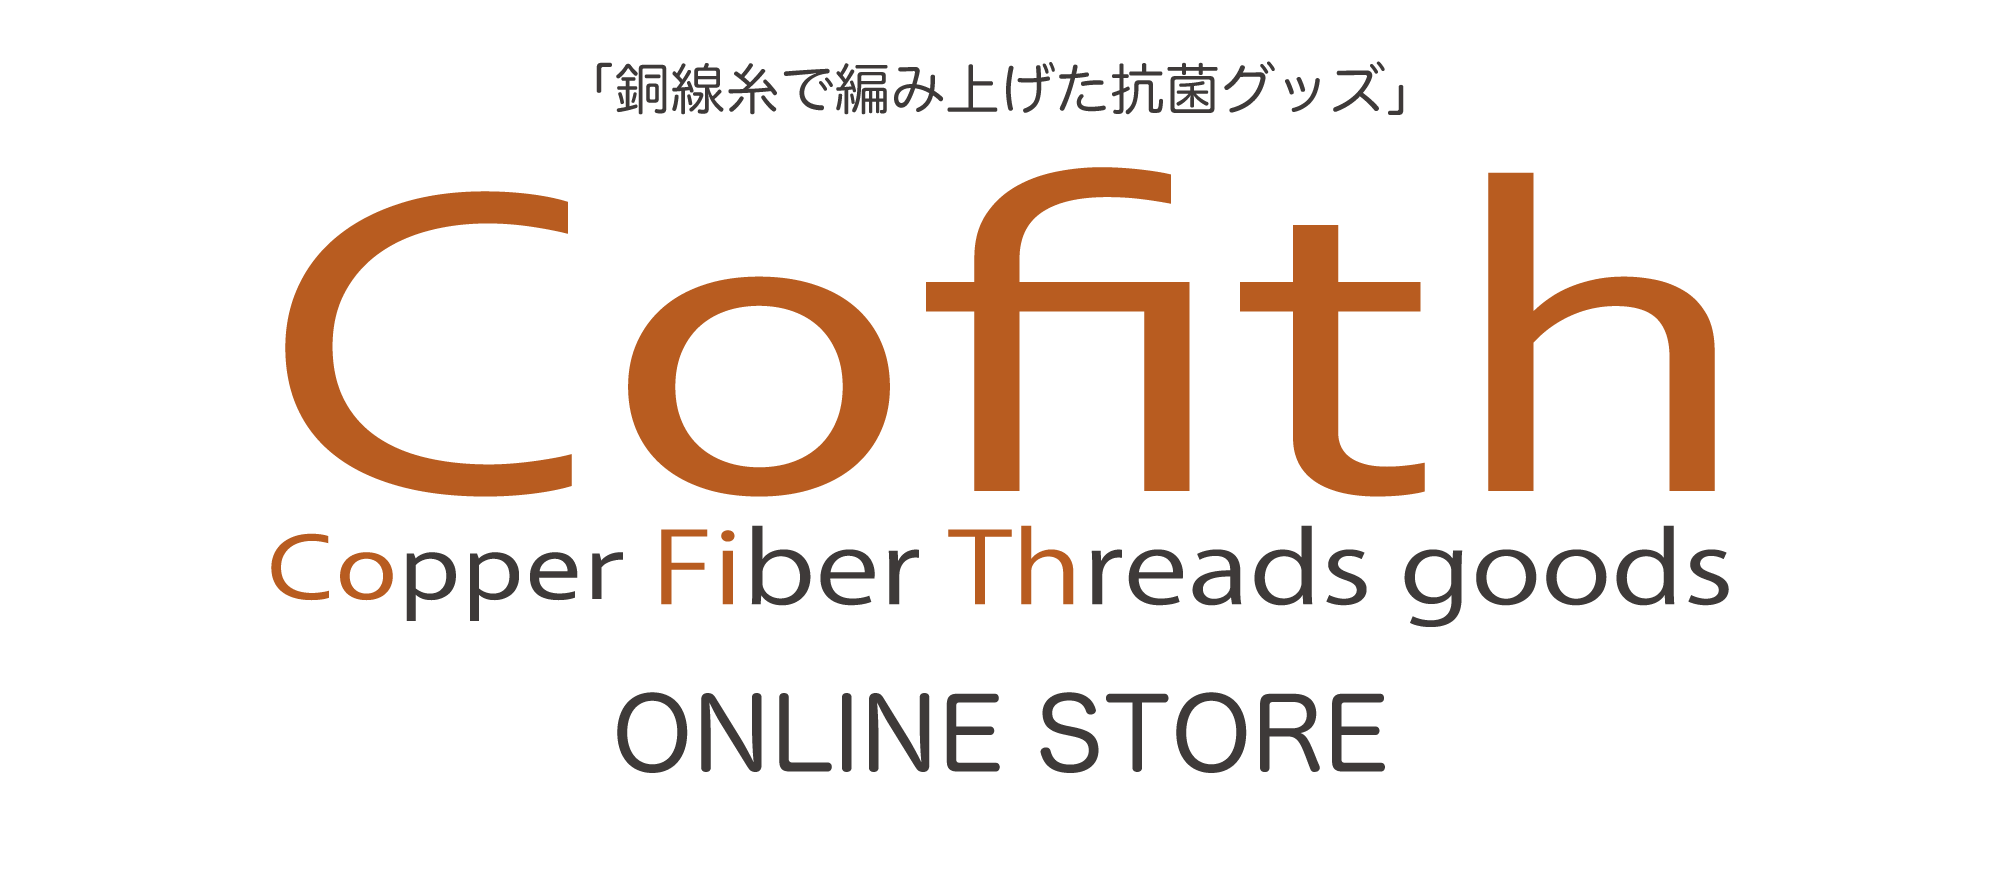 Cofith | 銅線糸で編み上げた抗菌グッズ コフィス